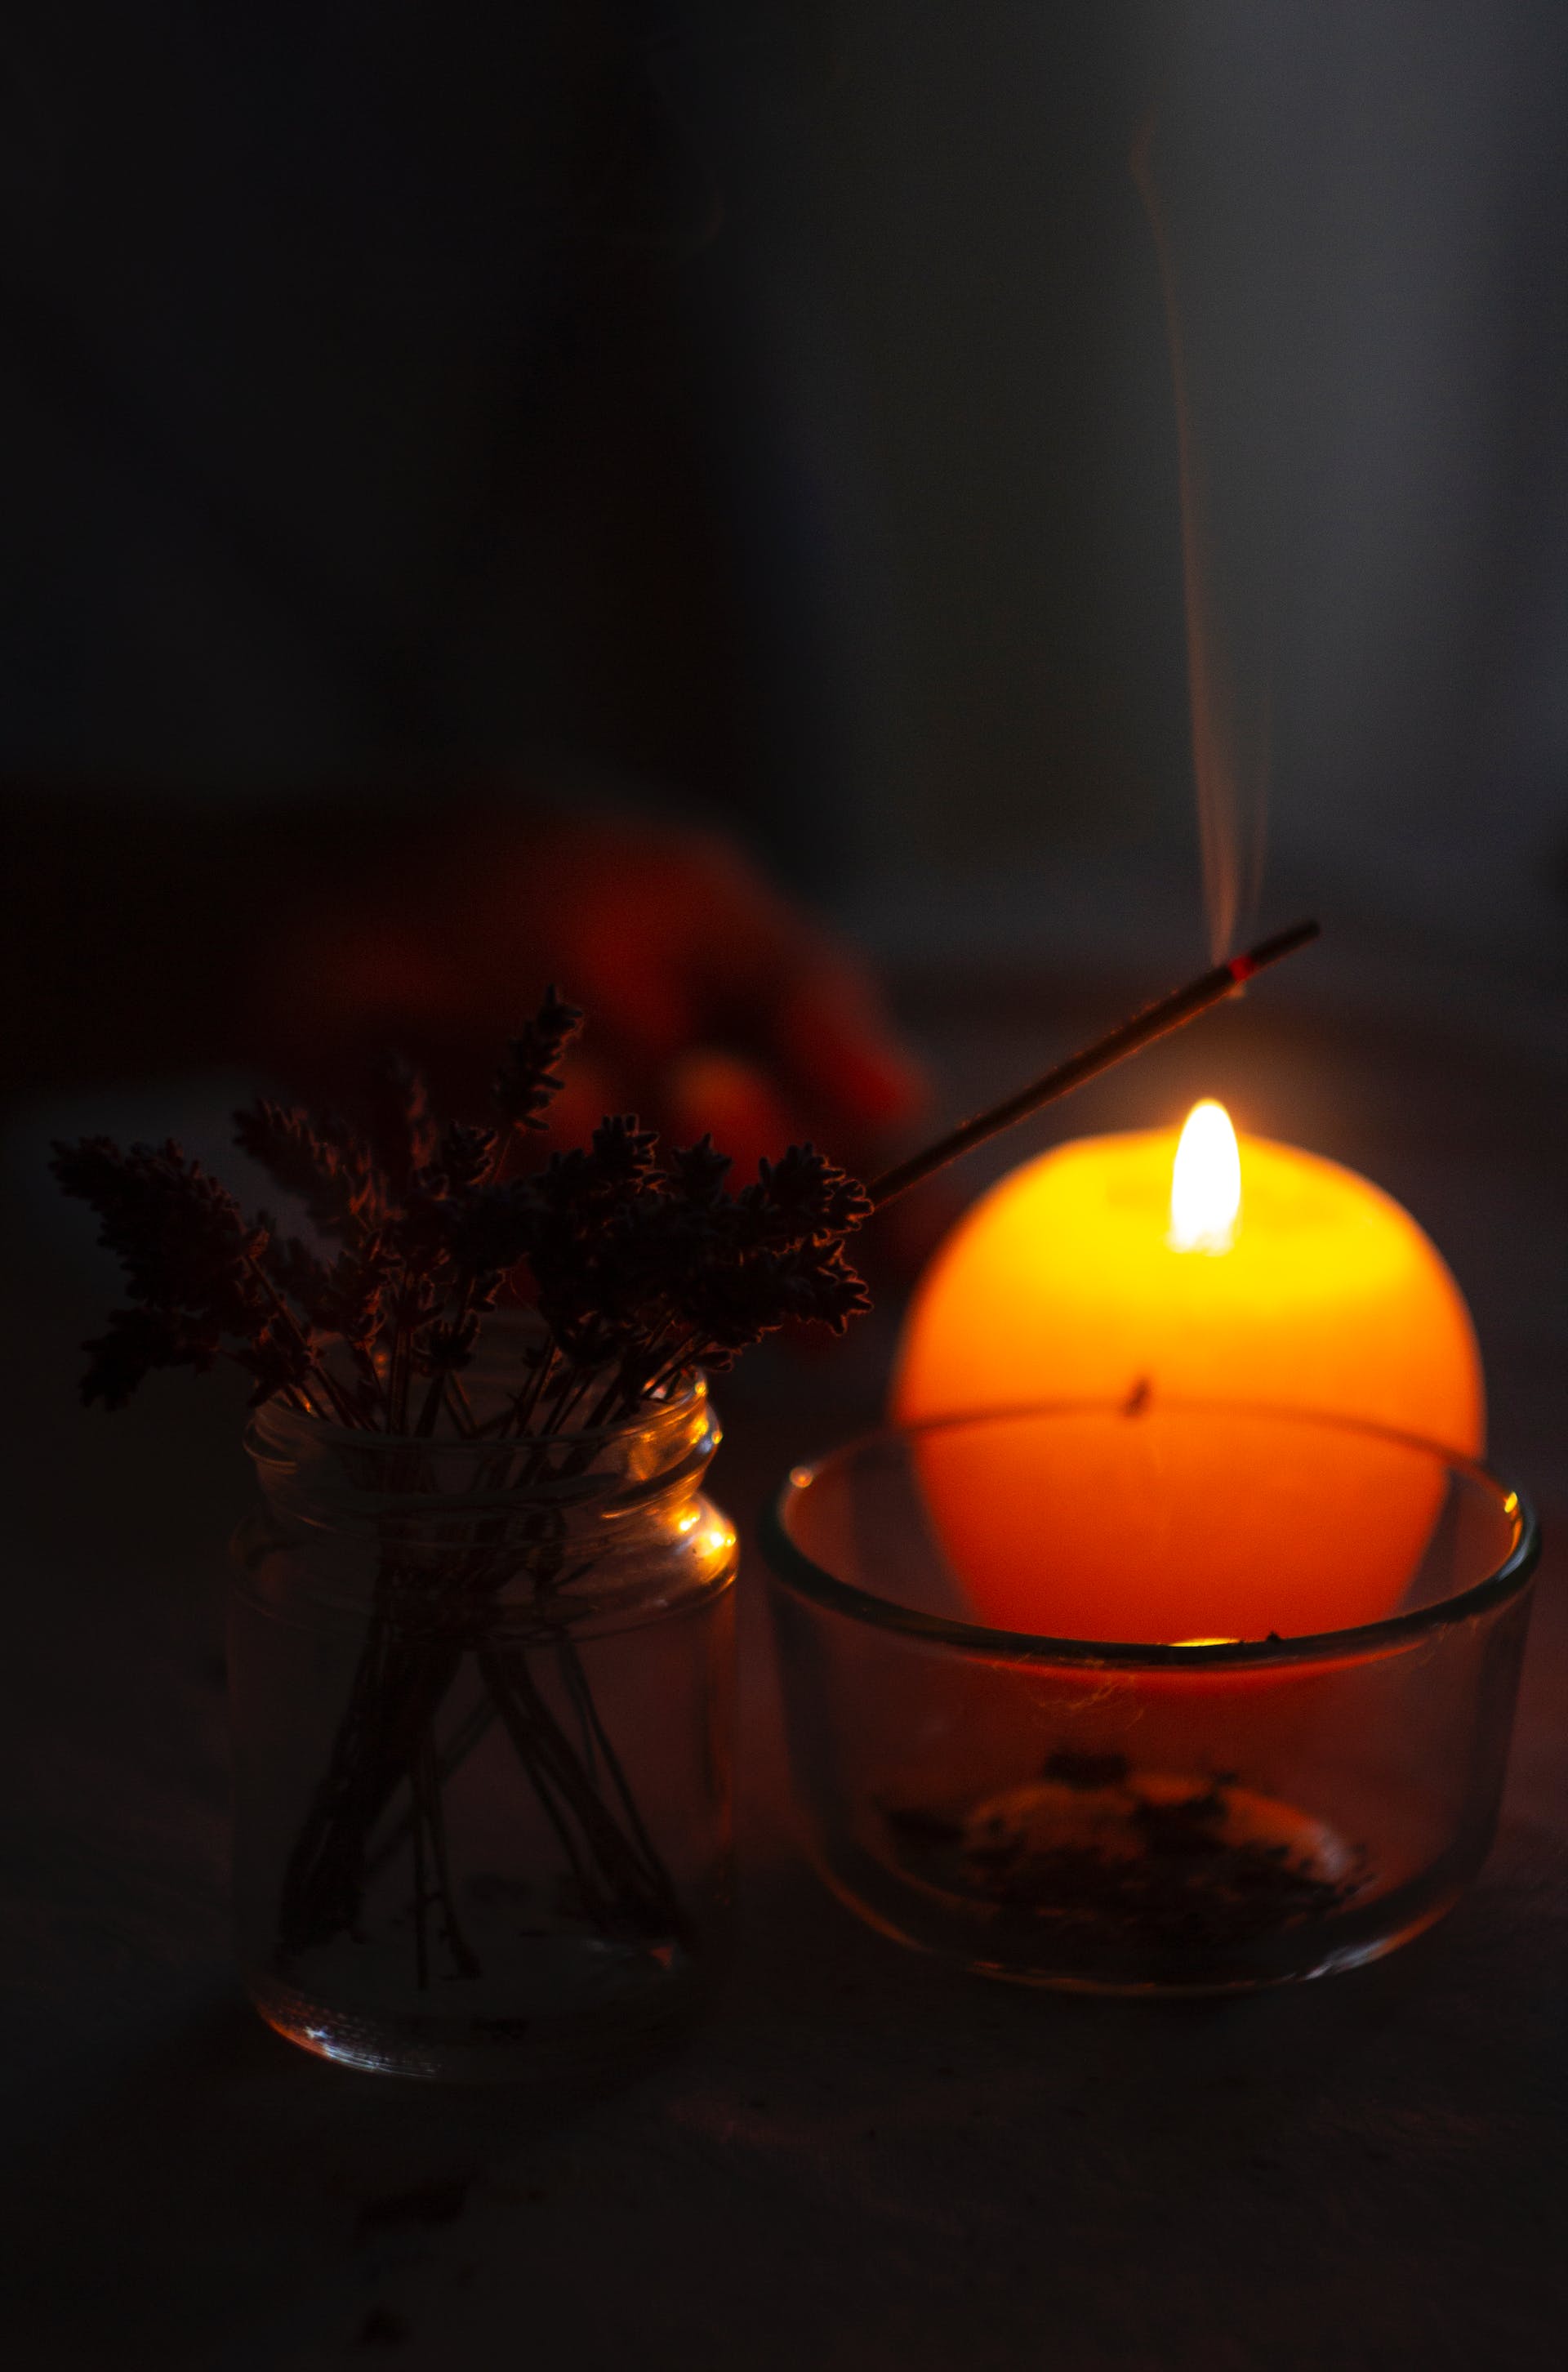 Etwas angezündeter Weihrauch und eine brennende Kerze | Quelle: Pexels